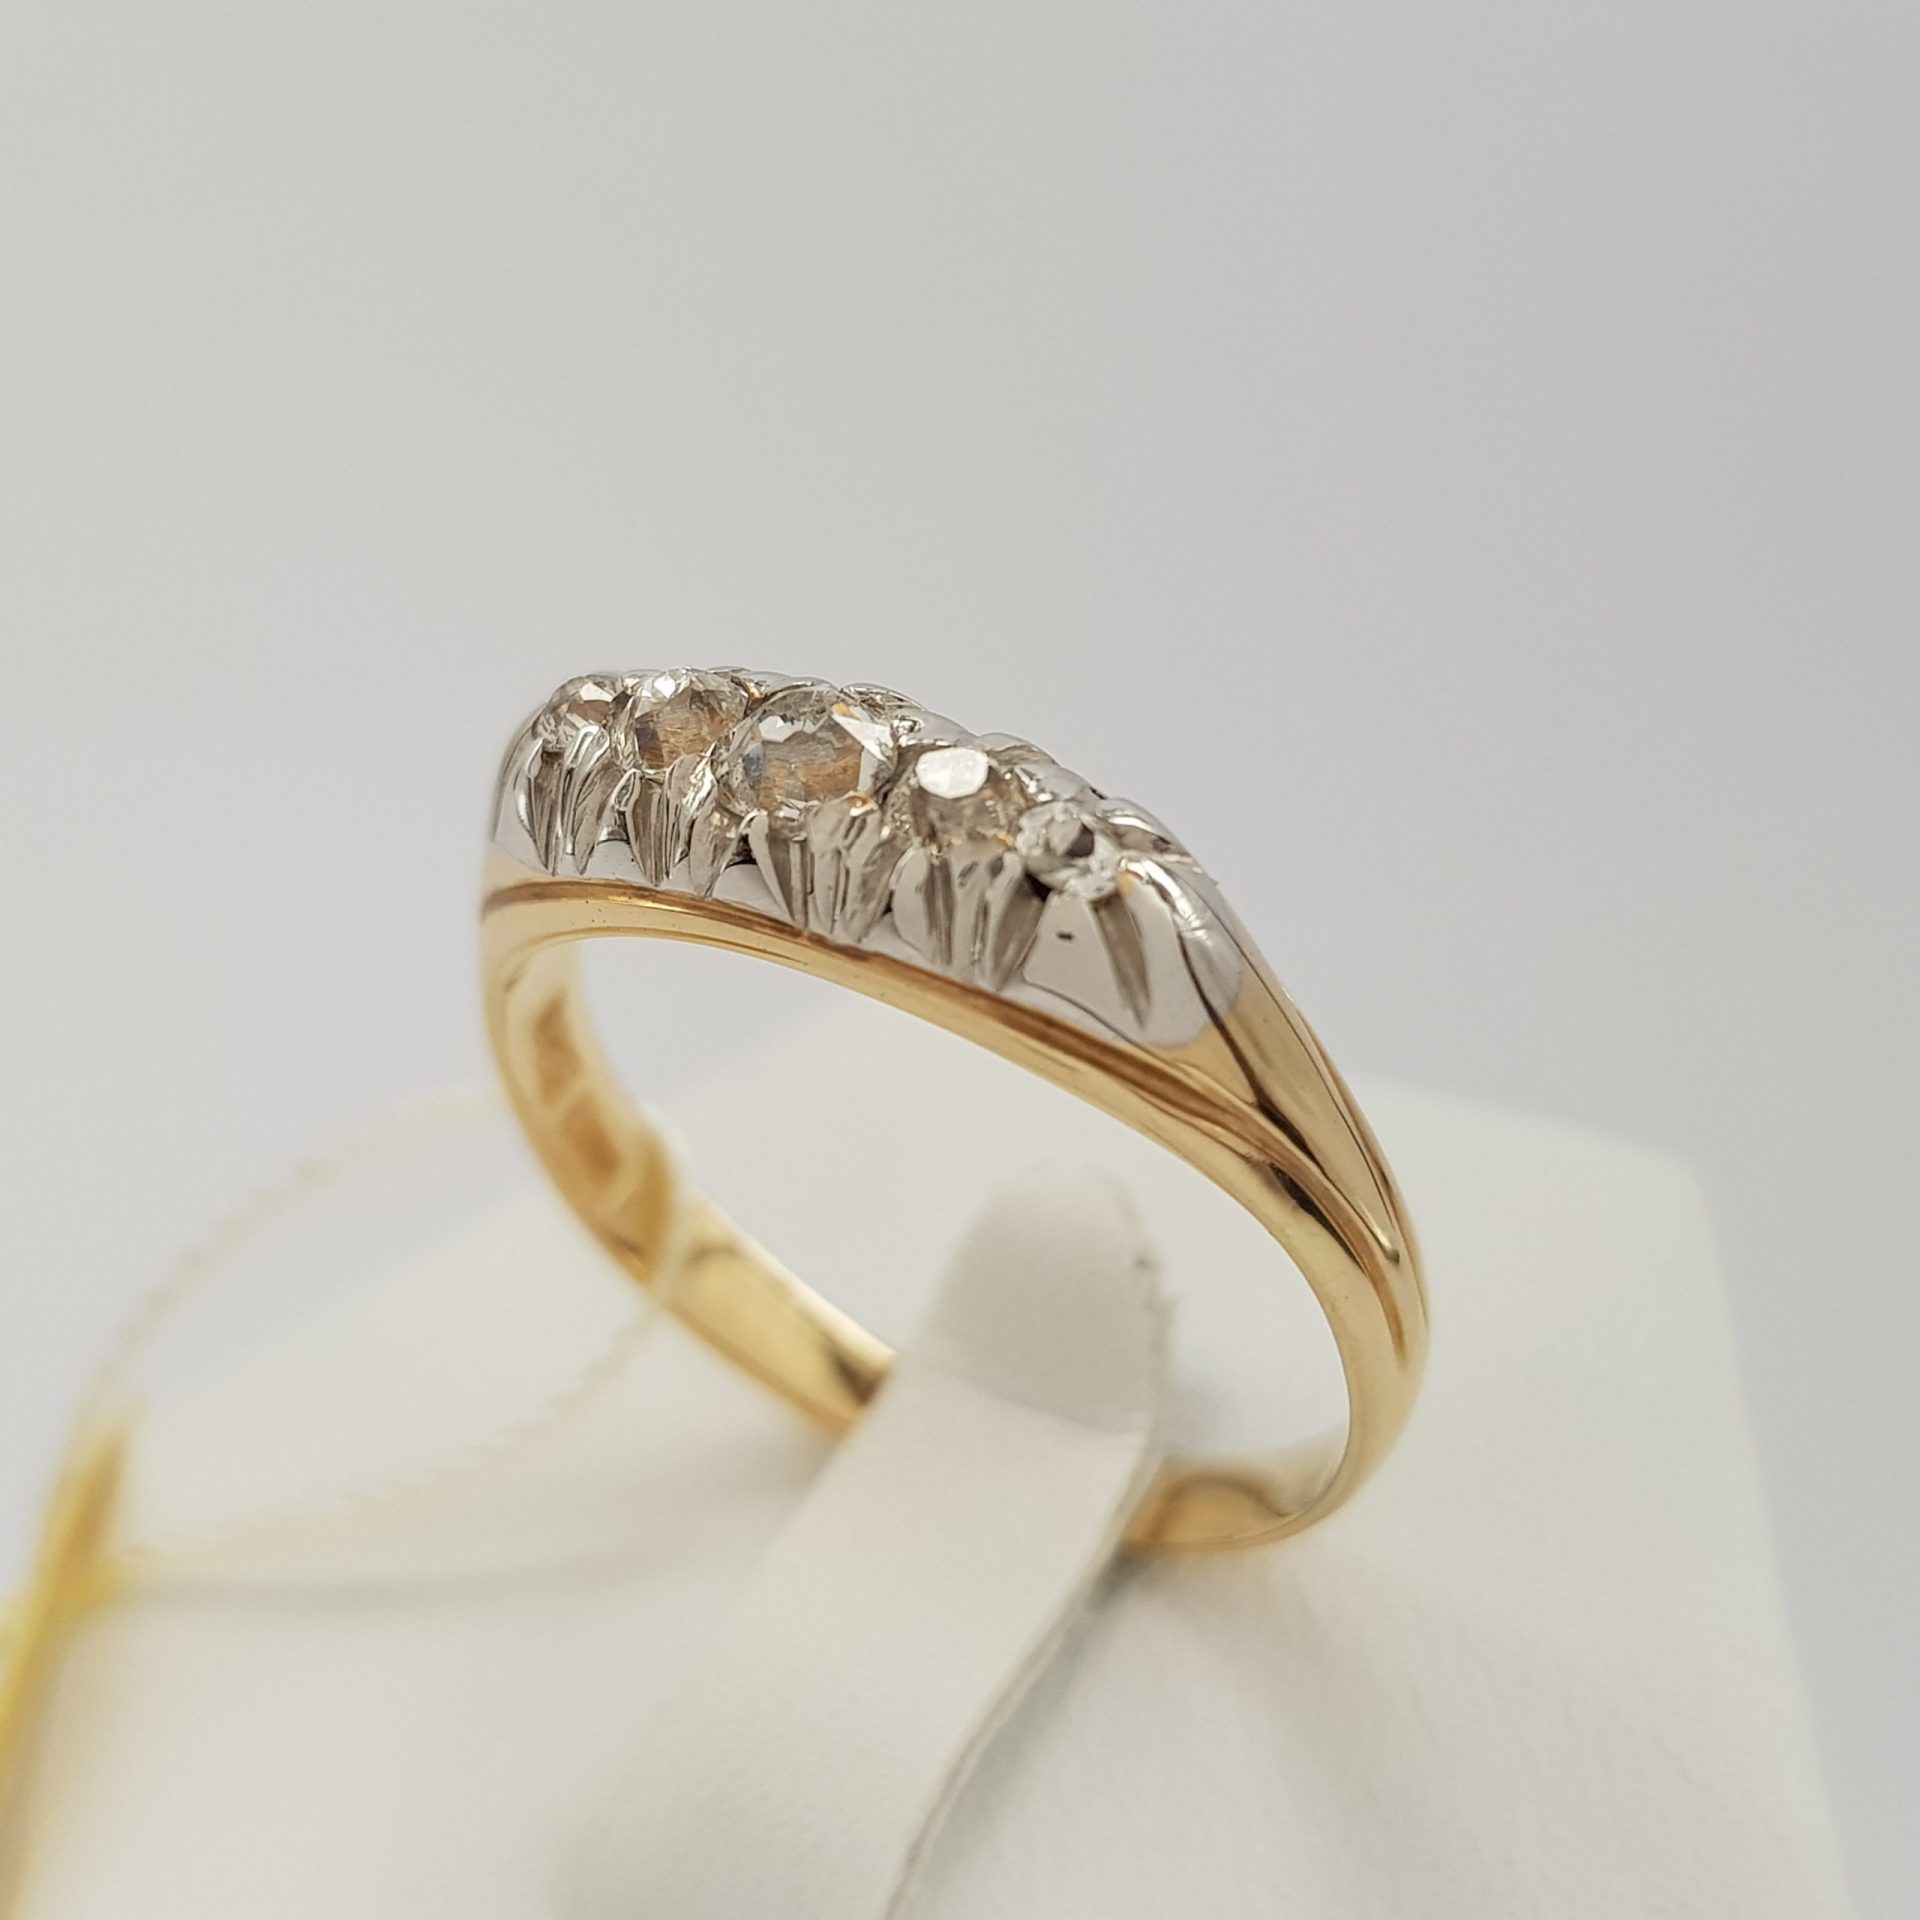 Wyjątkowy pierścionek złoty z 5 diamentami o łącznej masie 0,35 ct